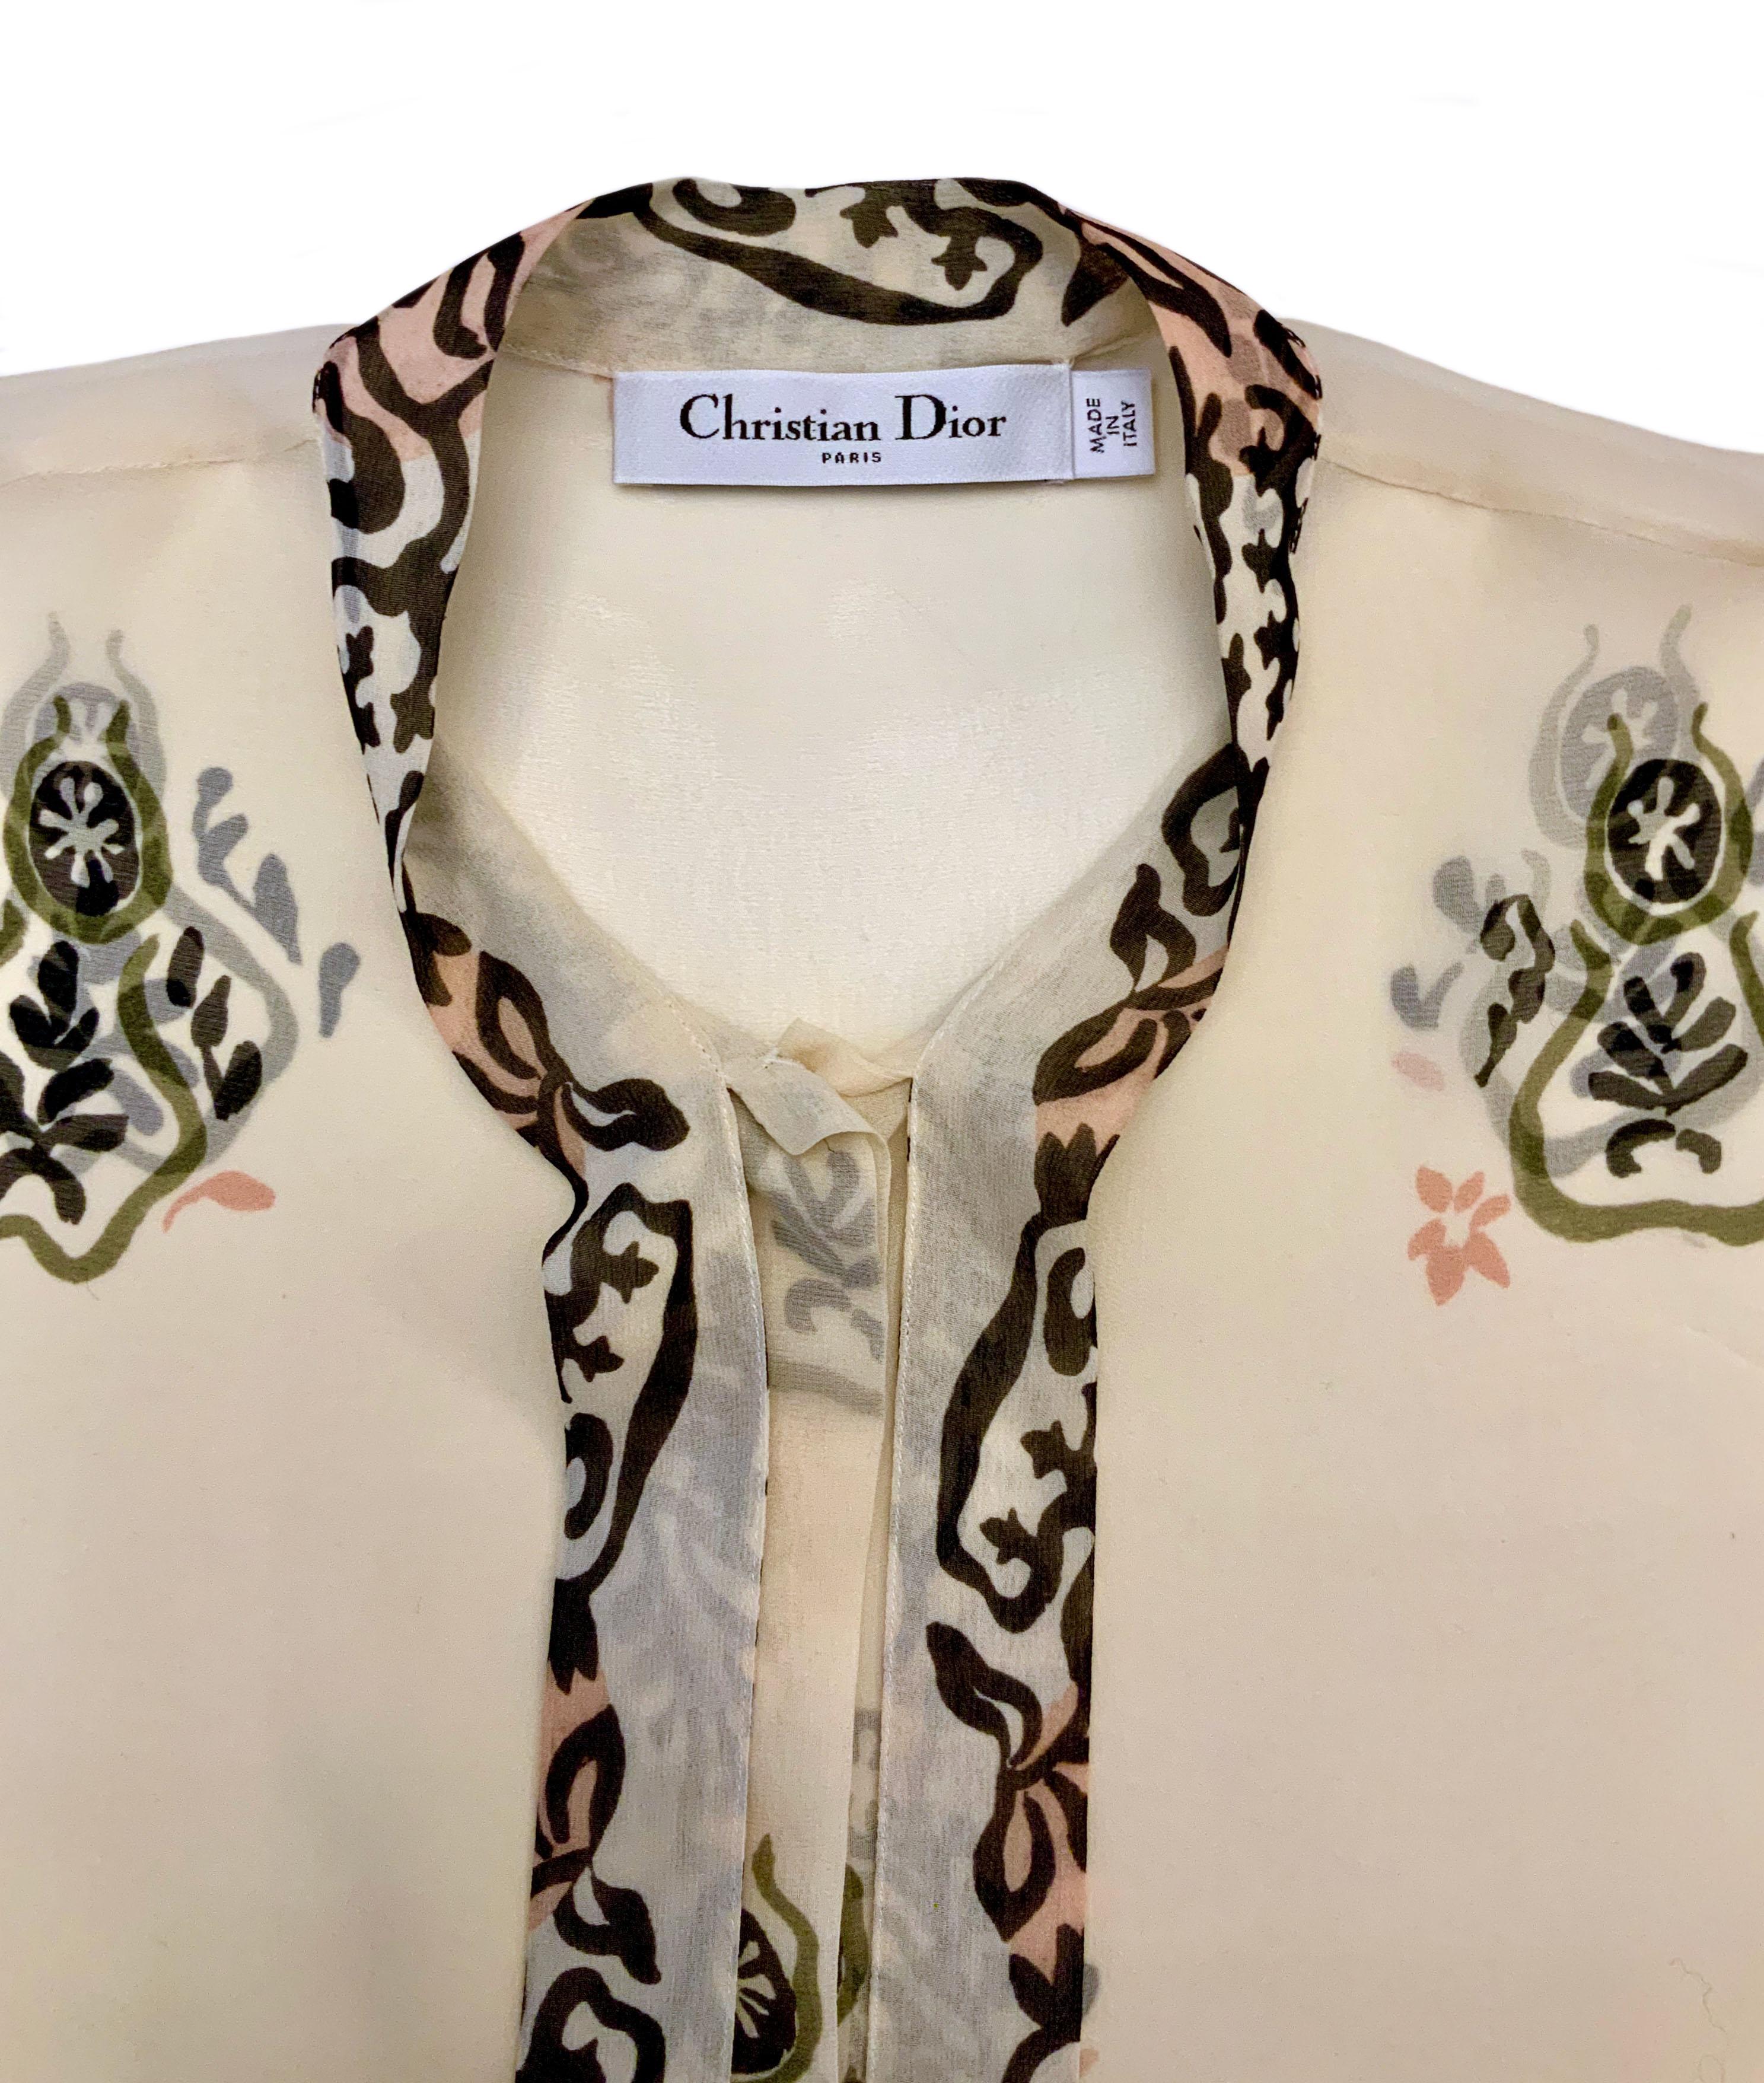 Inspirée du motif Navajo dans une délicate couleur crème, cette blouse en pure soie fait partie de la collection Pre Fall 2019.
Il peut être porté avec le cardigan assorti ou tout simplement seul !
Manches longues et encolure